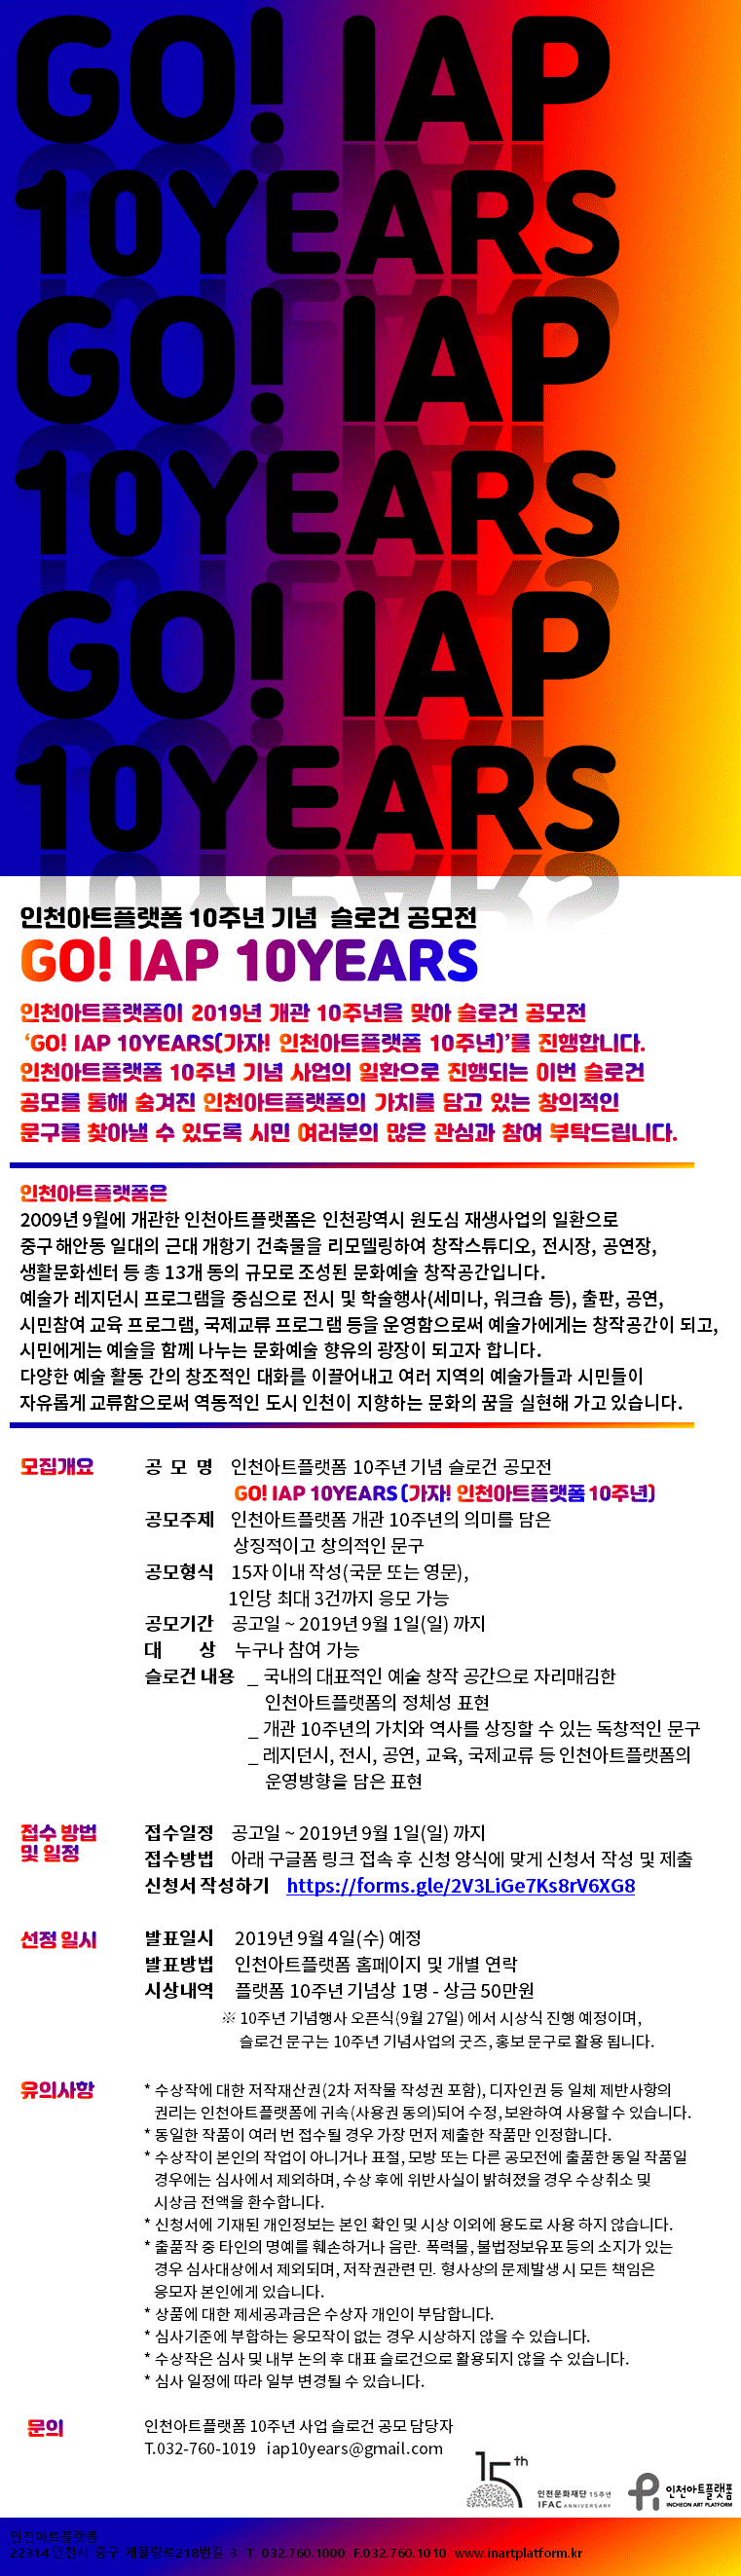 인천아트플랫폼 10주년 기념 슬로건 공모전 (~ 9. 1)